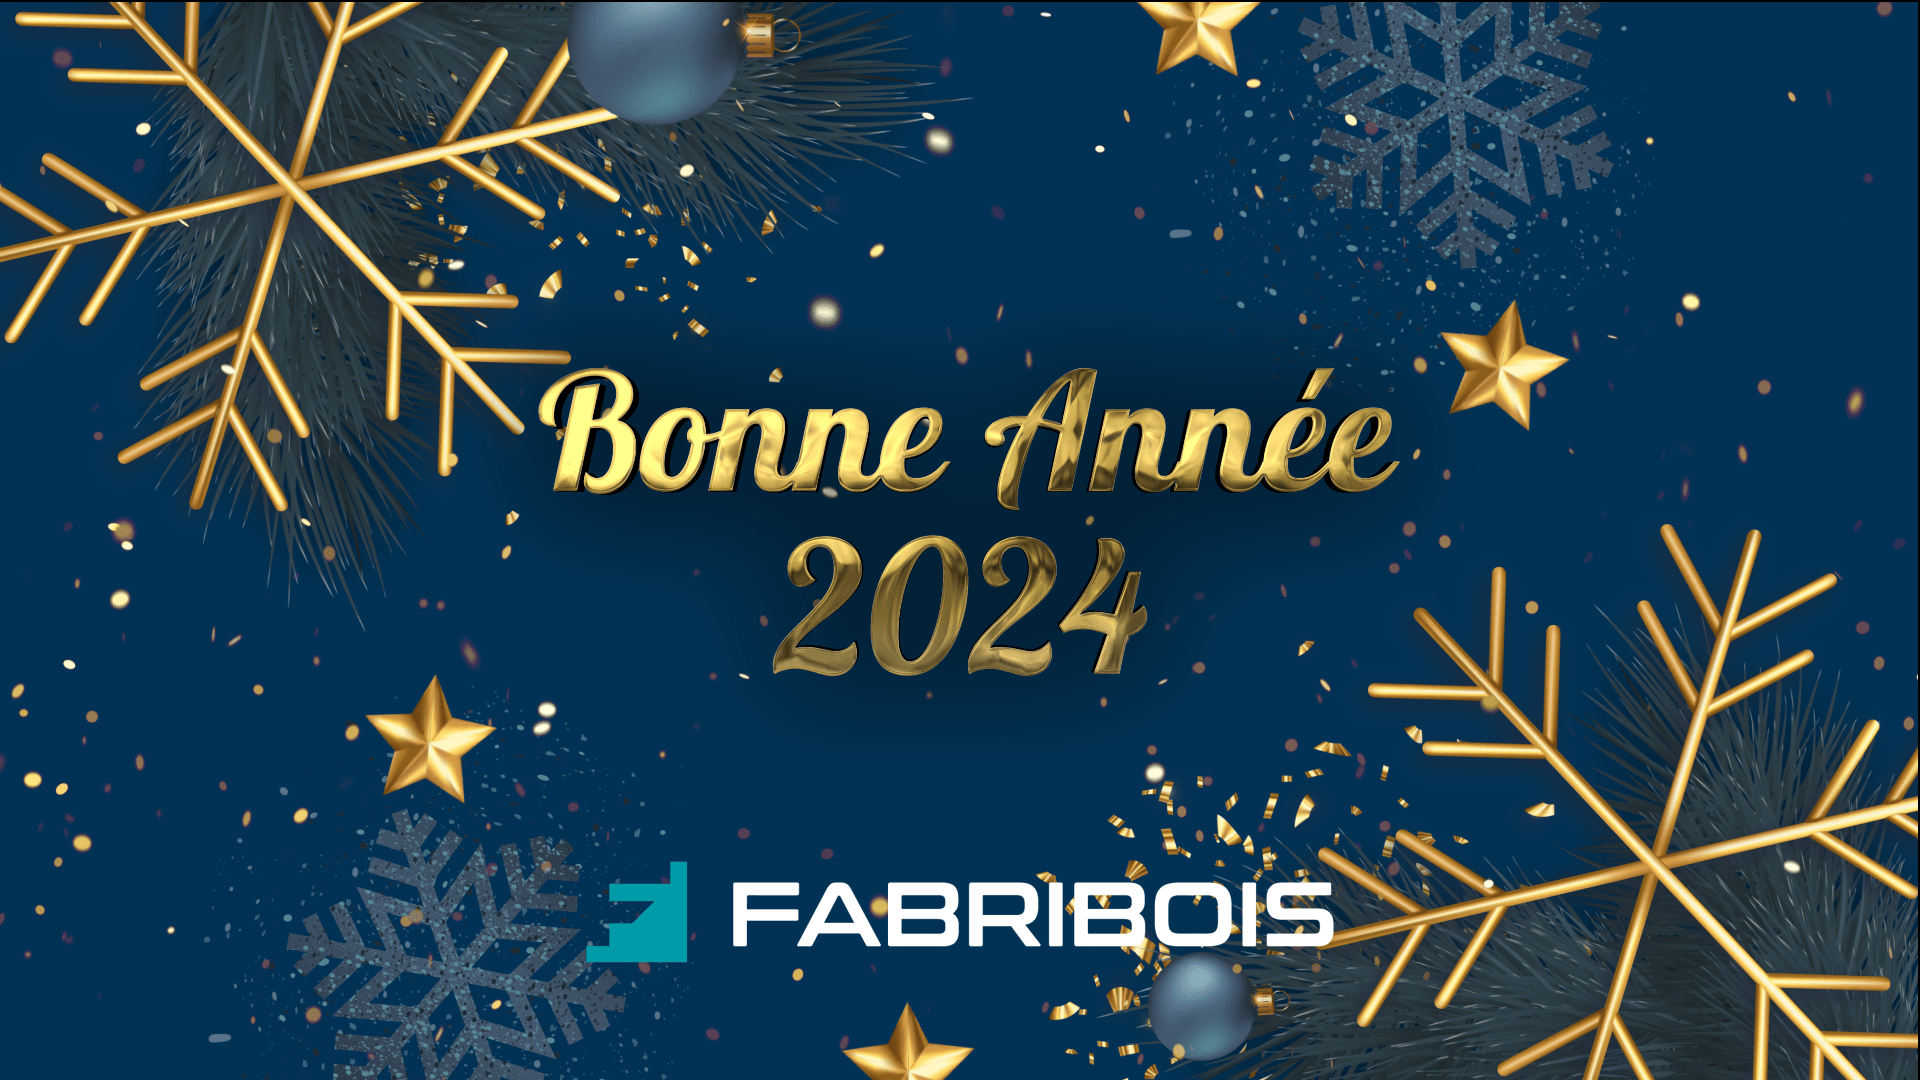 Fabribois vous souhaite une bonne année 2024